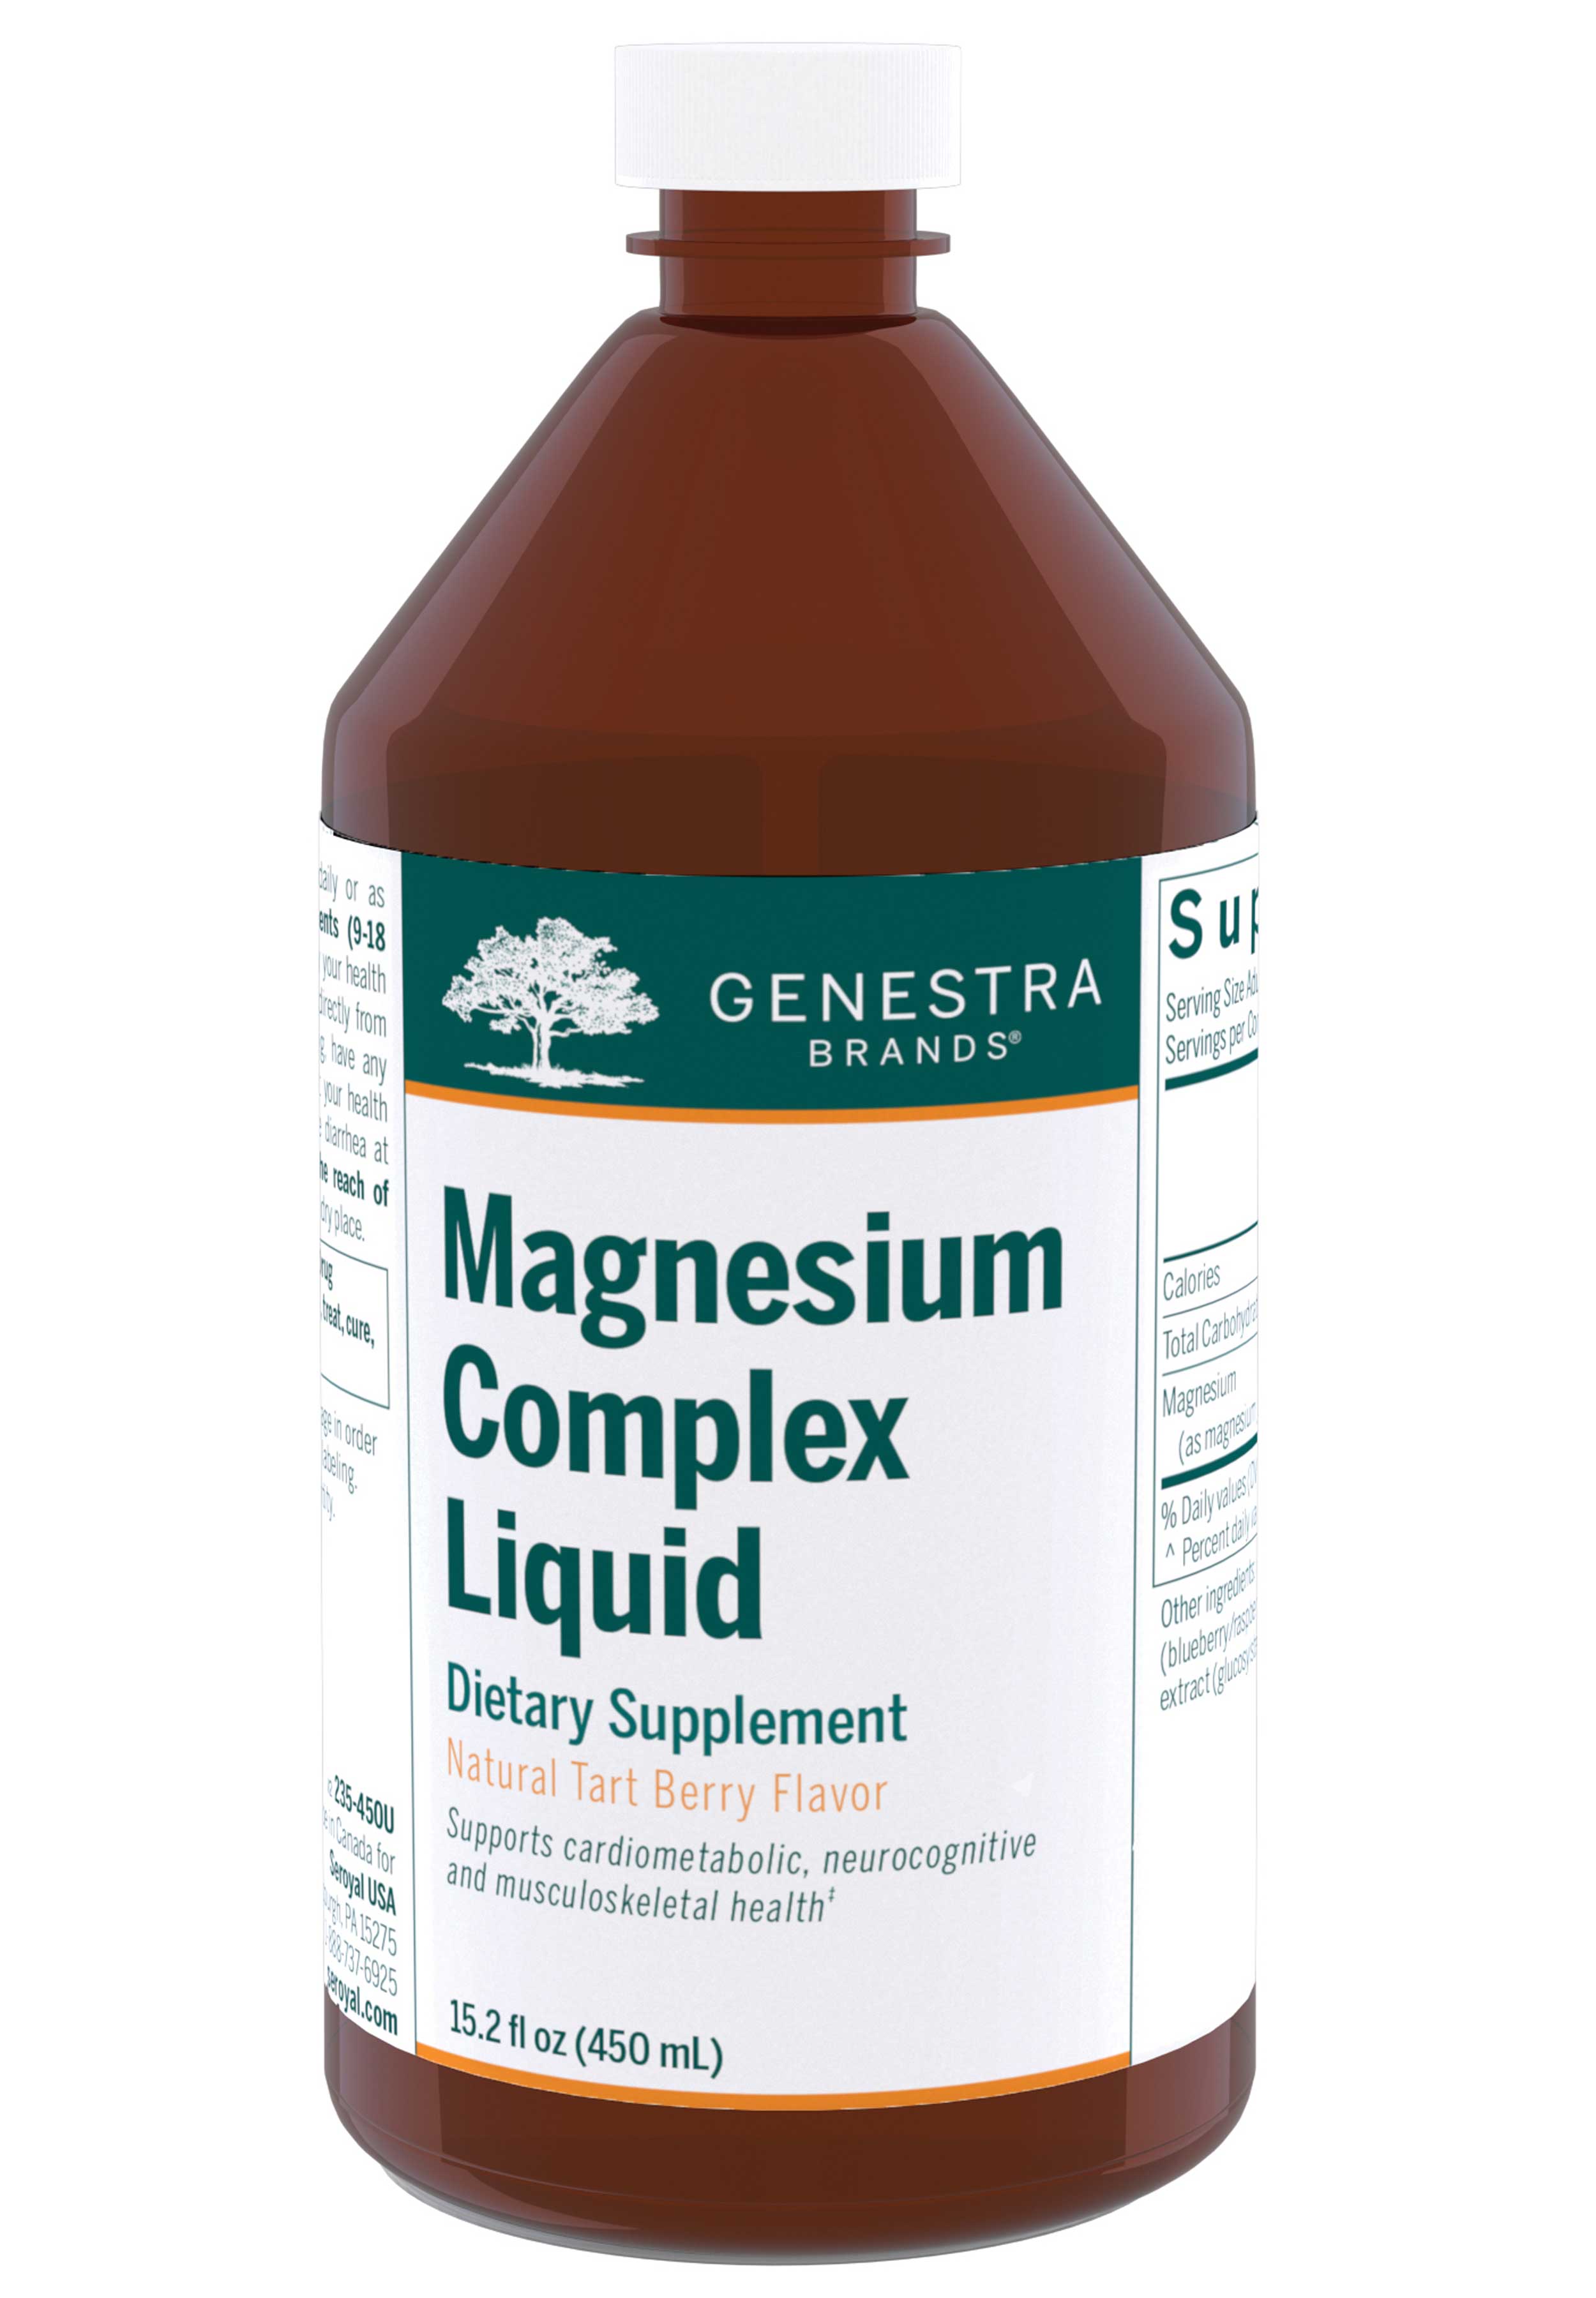 Genestra Brands Magnesium Complex Liquid